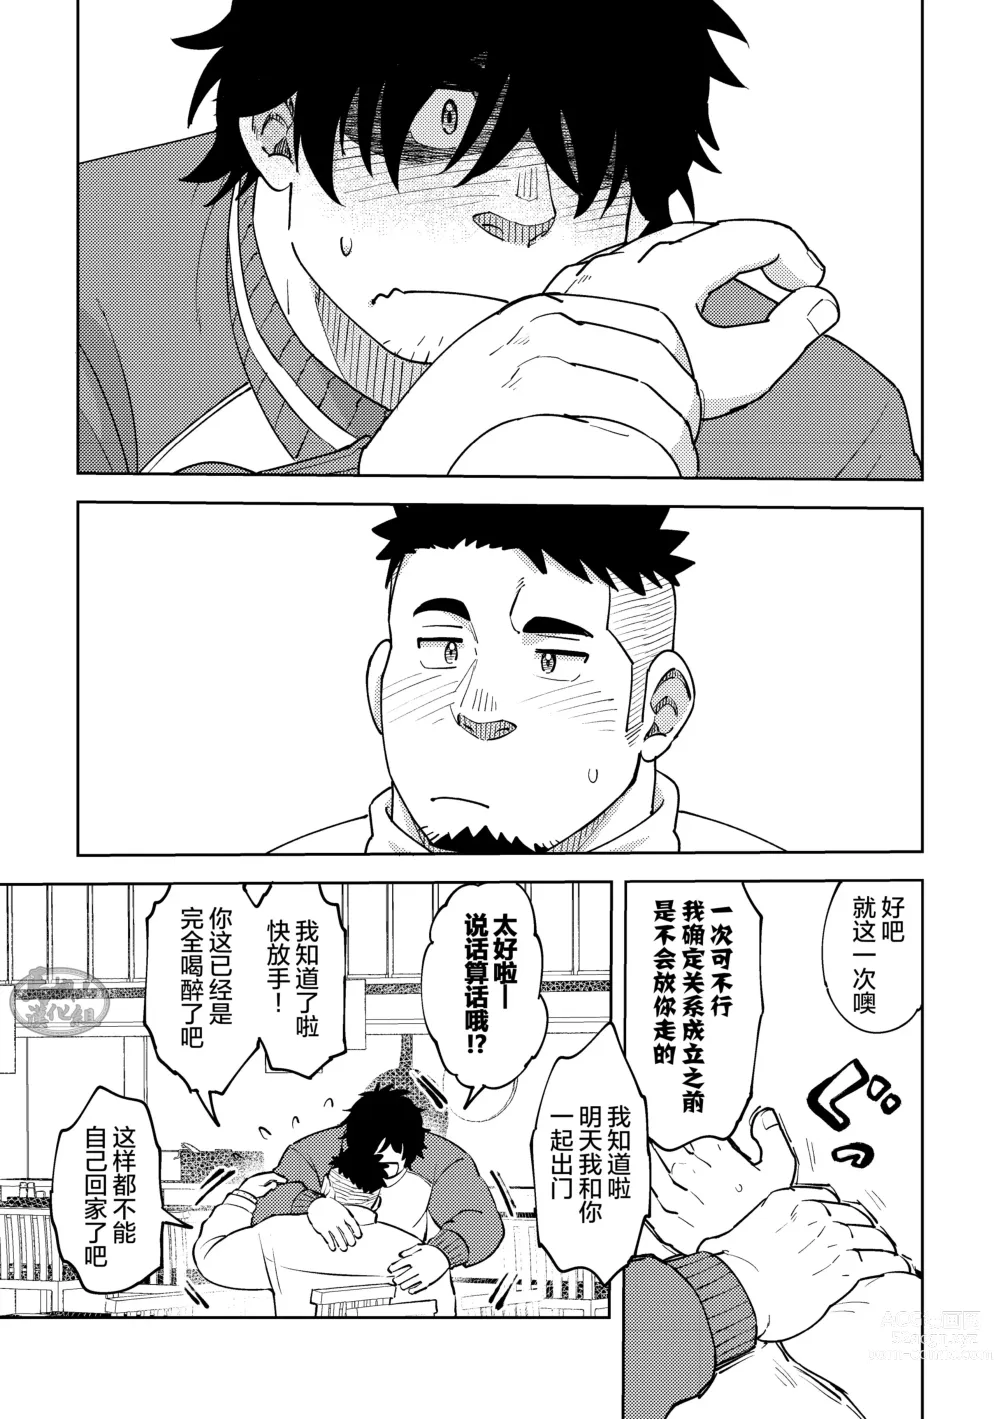 Page 7 of manga 後輩くんは変わりたい